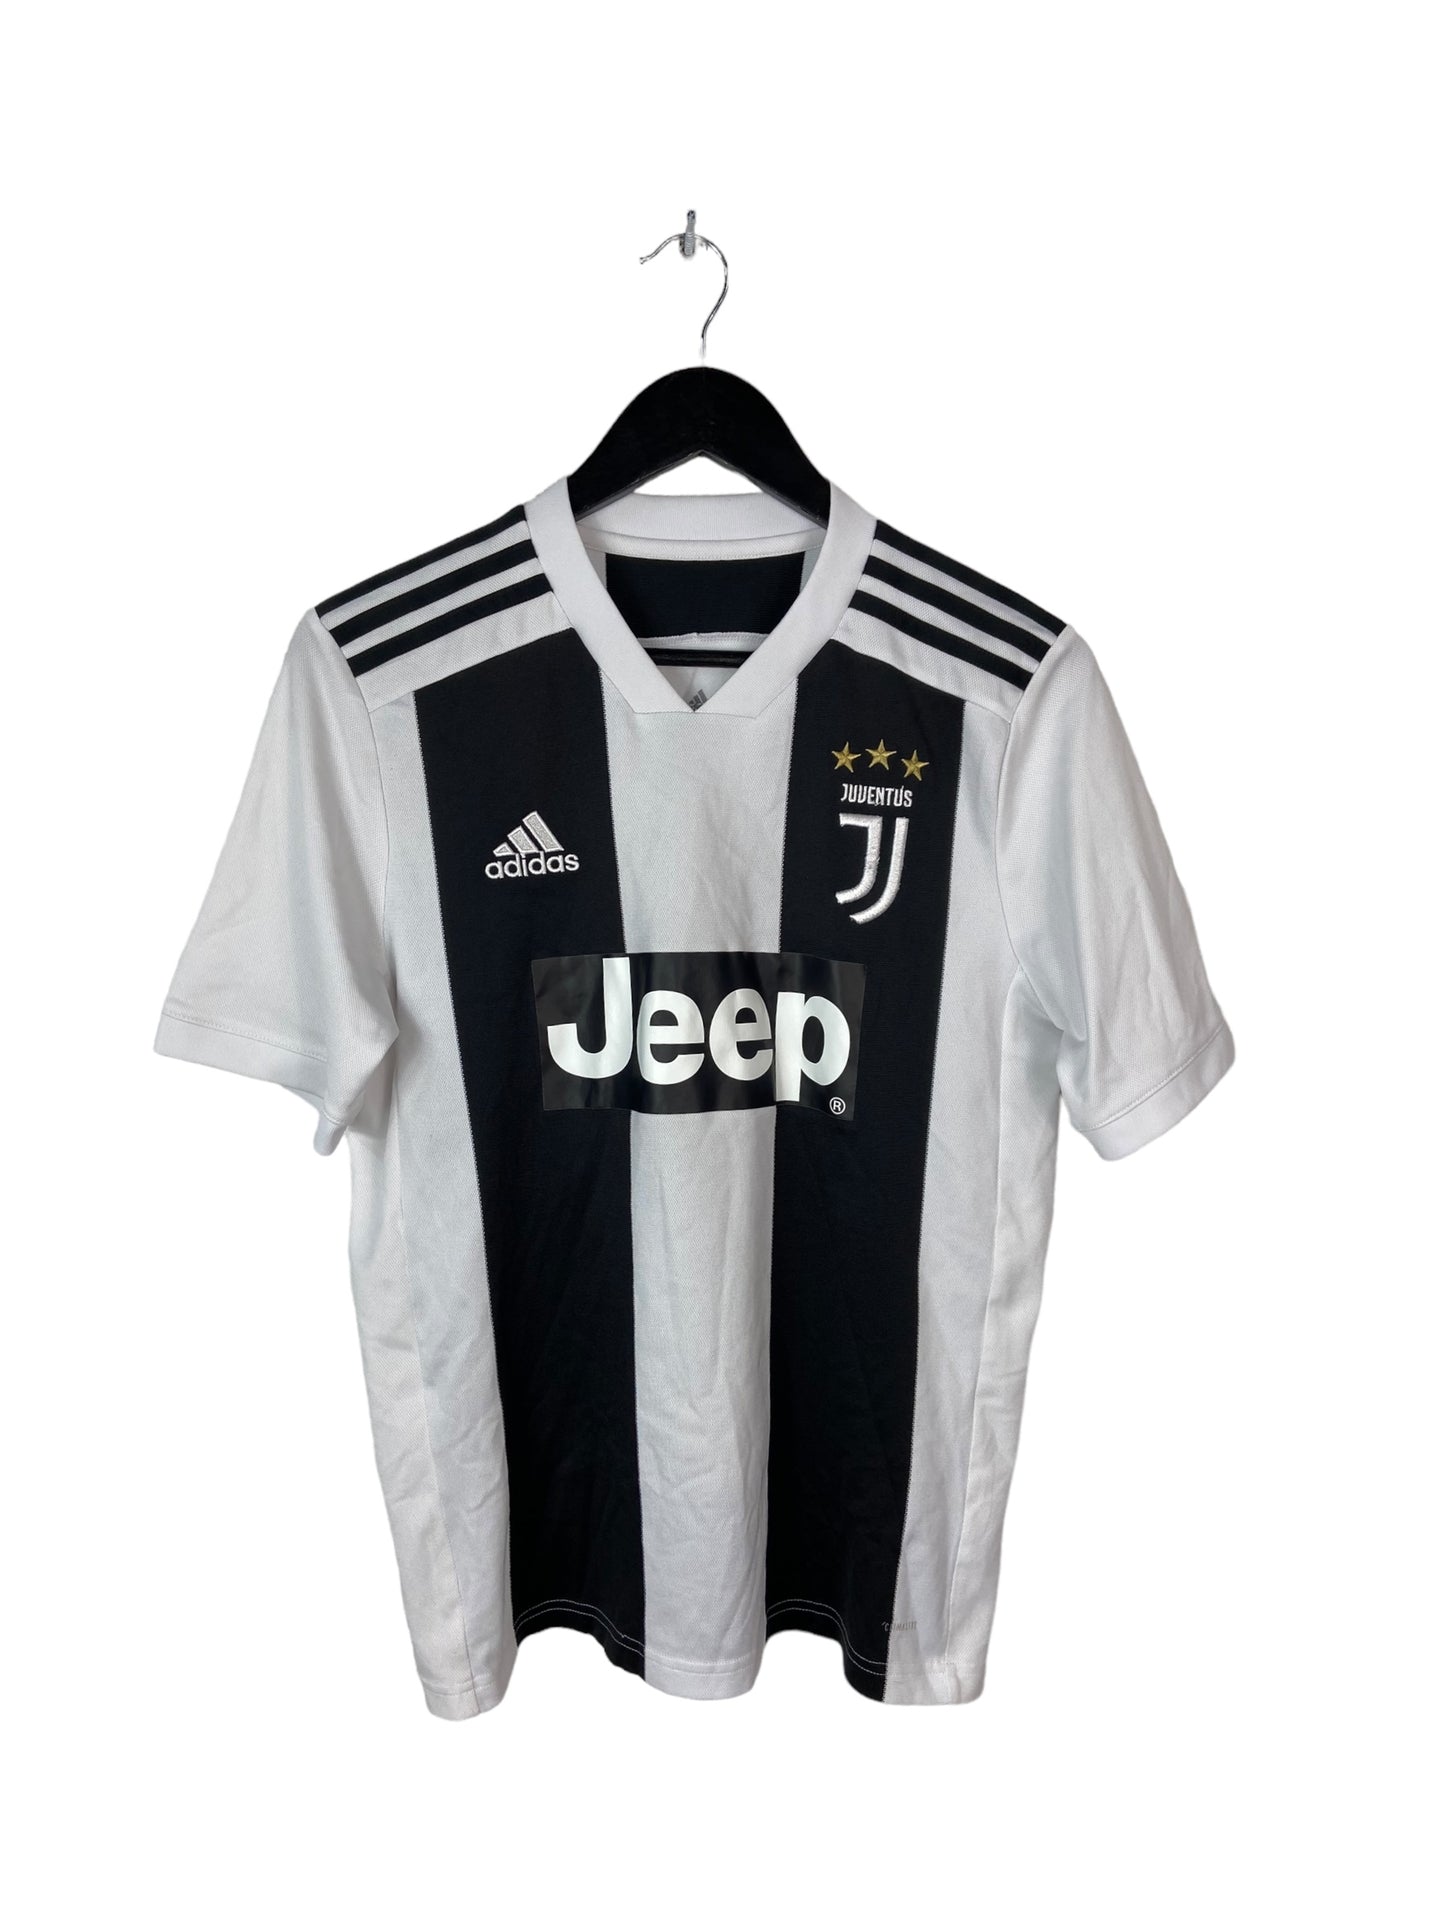 Juventus Adidas Home 2018 Soccer Jersey Sz S